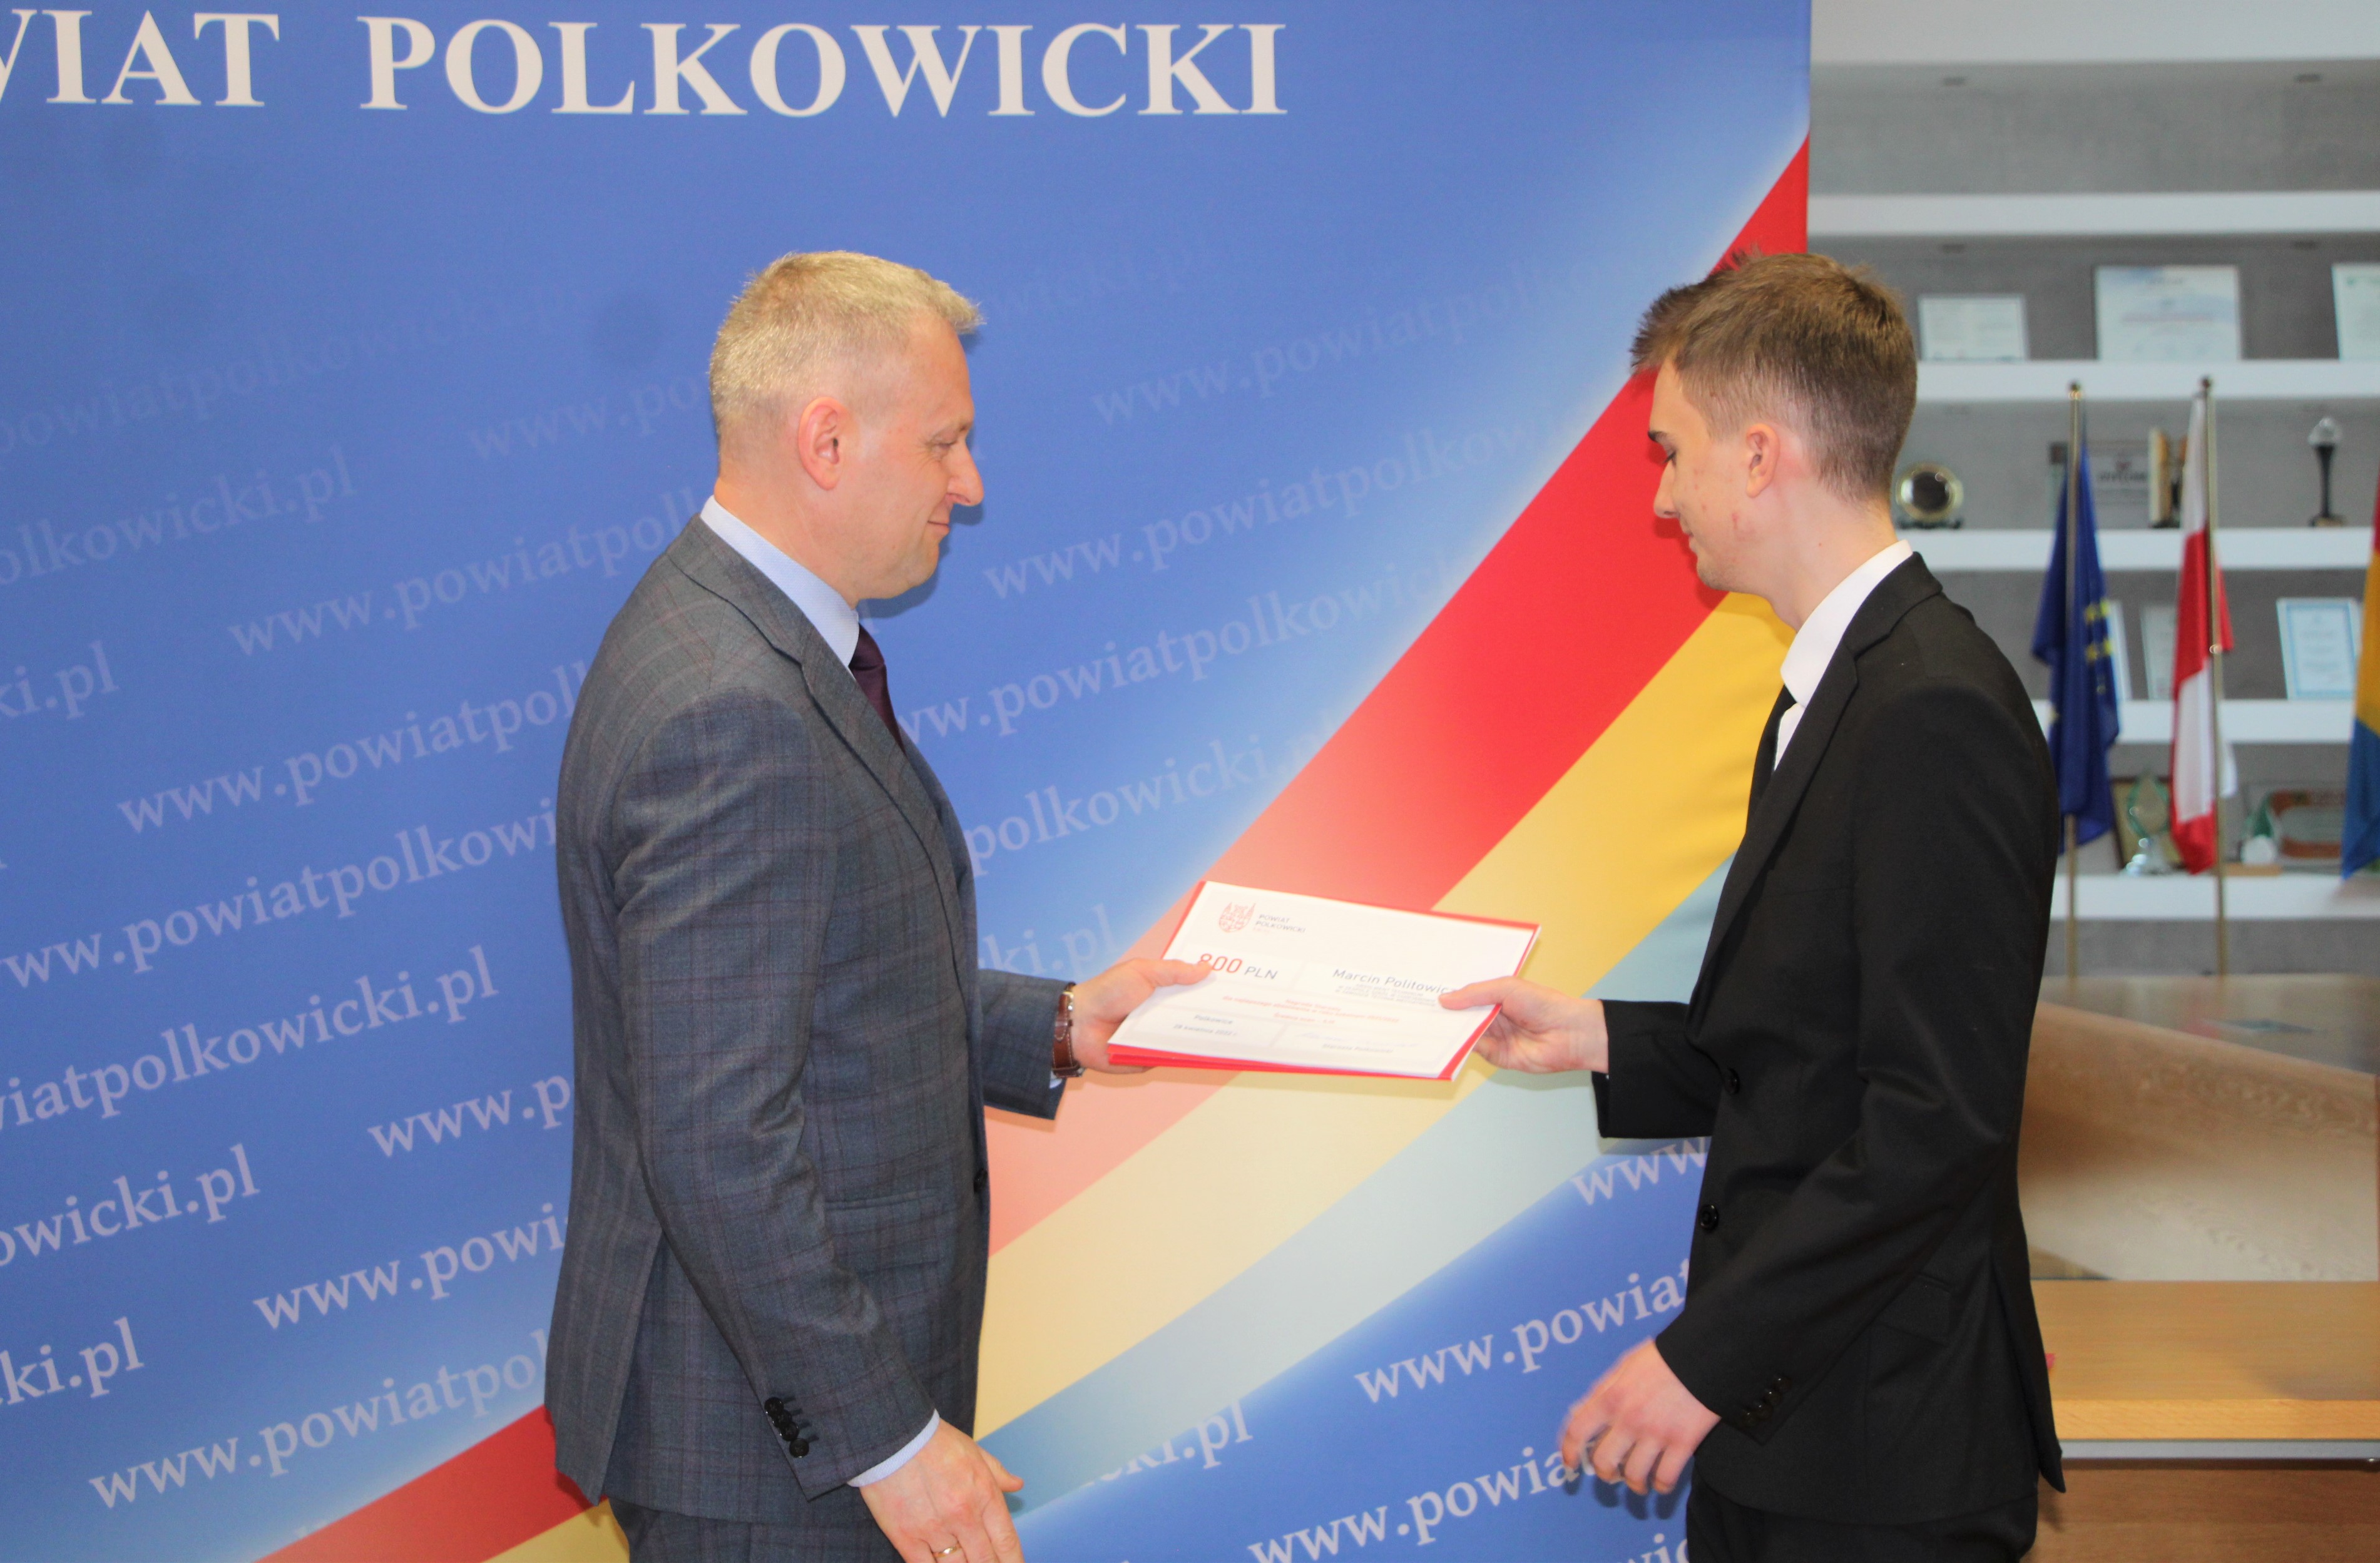 Wręczenie nagród Starosty Polkowickiego za najlepsze wyniki w nauce